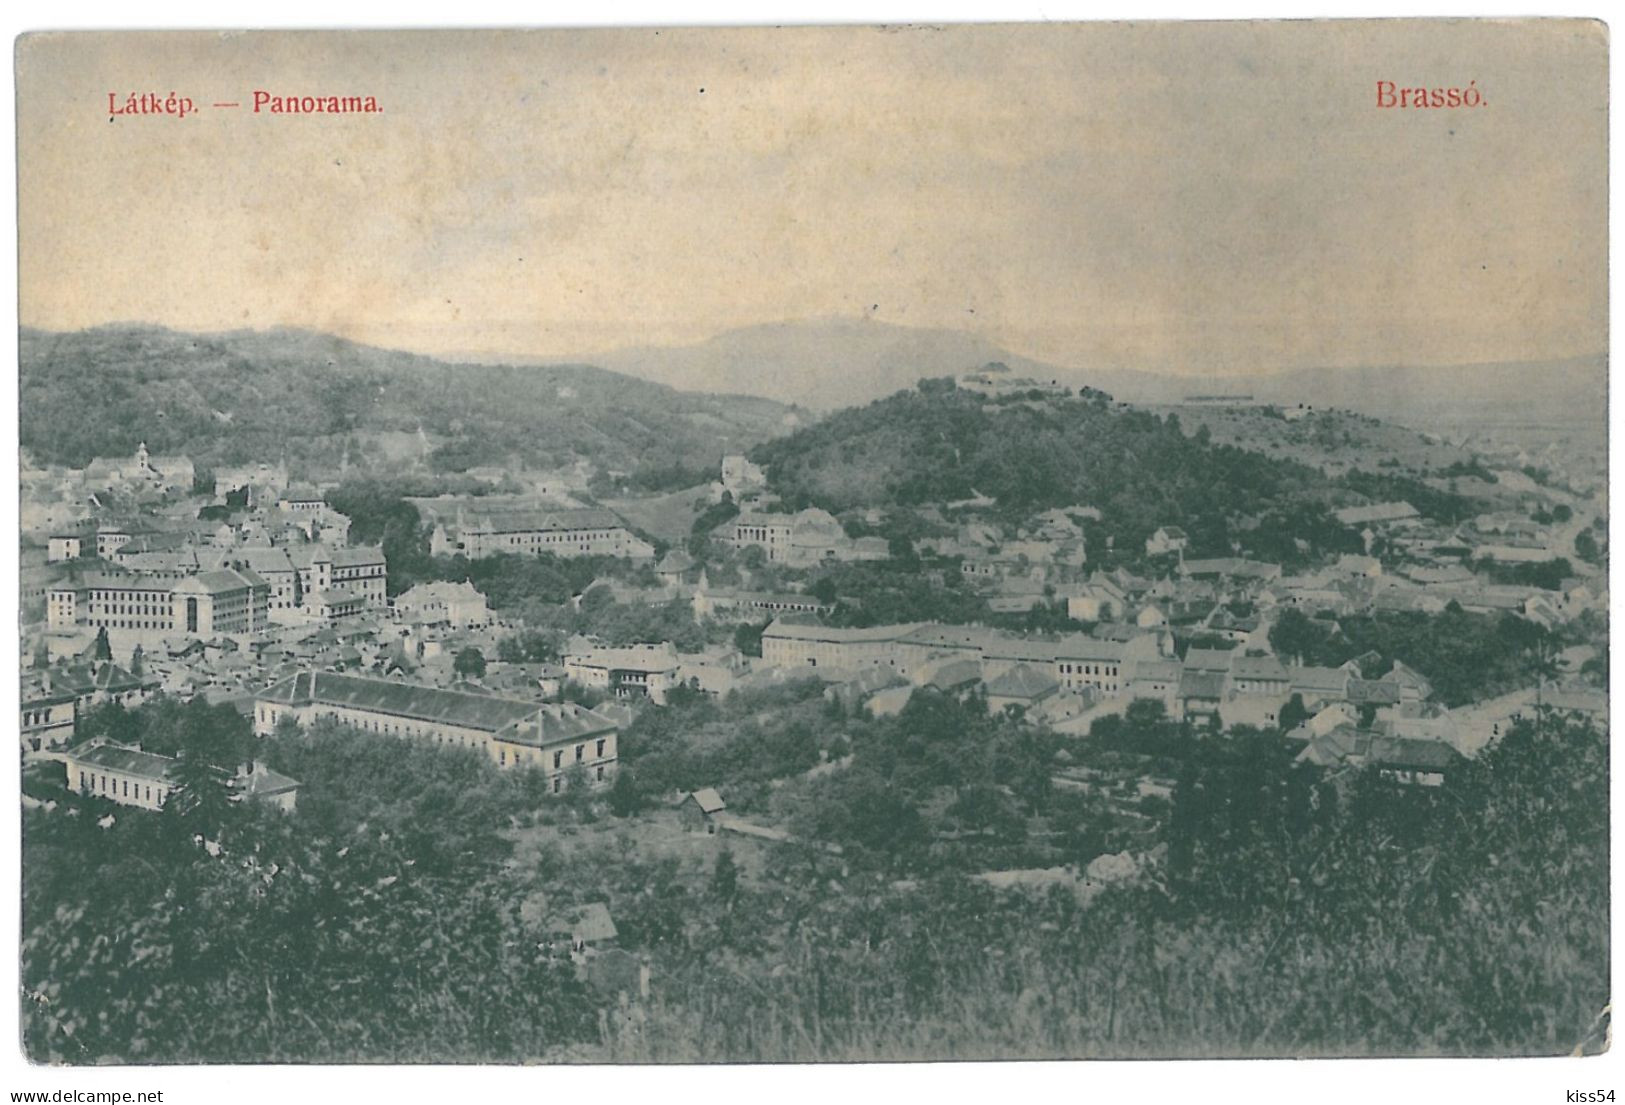 RO 47 - 11987 BRASOV, Romania, Panorama - Old Postcard - Unused - Roumanie